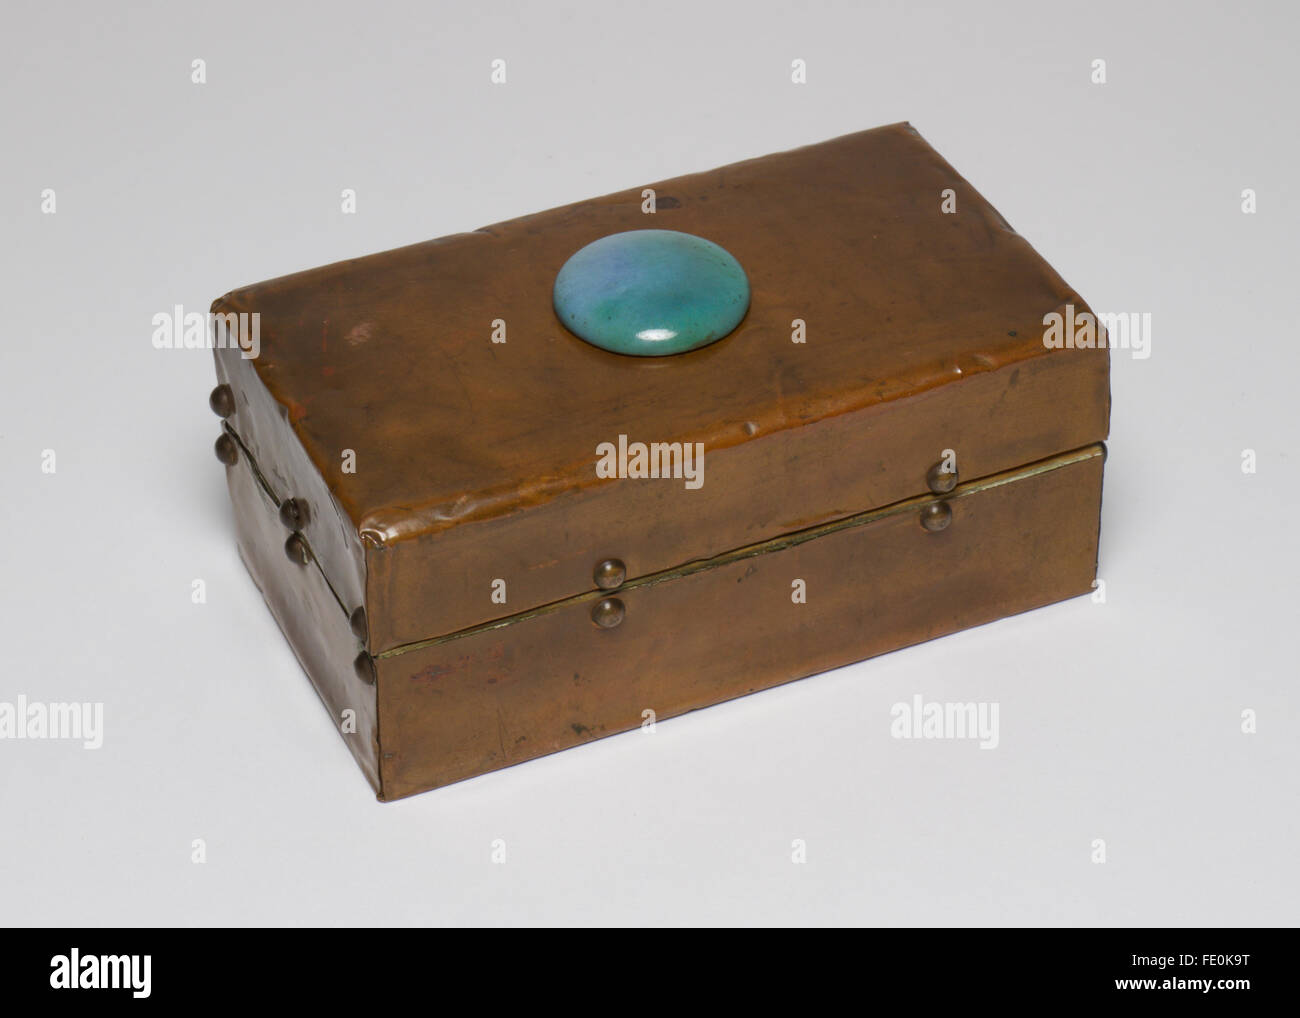 Kunst und Kunsthandwerk Kupfer Box, um 1910 aus. Klappdeckel mit keramischen Cabochon "Ruskin" Stein. Das Feld misst 10cm breit. Stockfoto